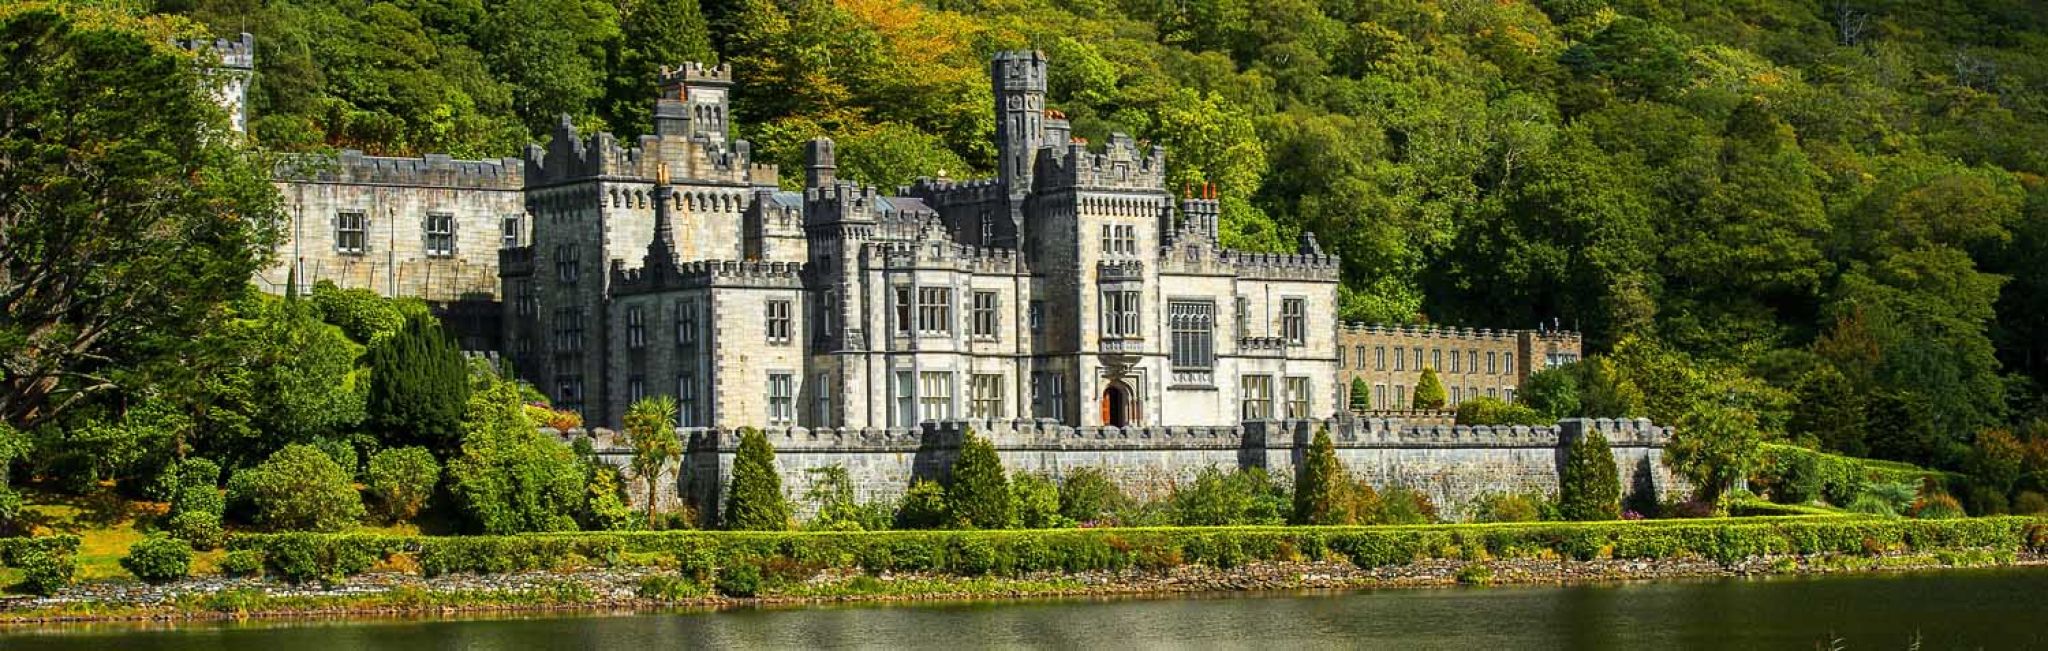 ireland castle tour packages